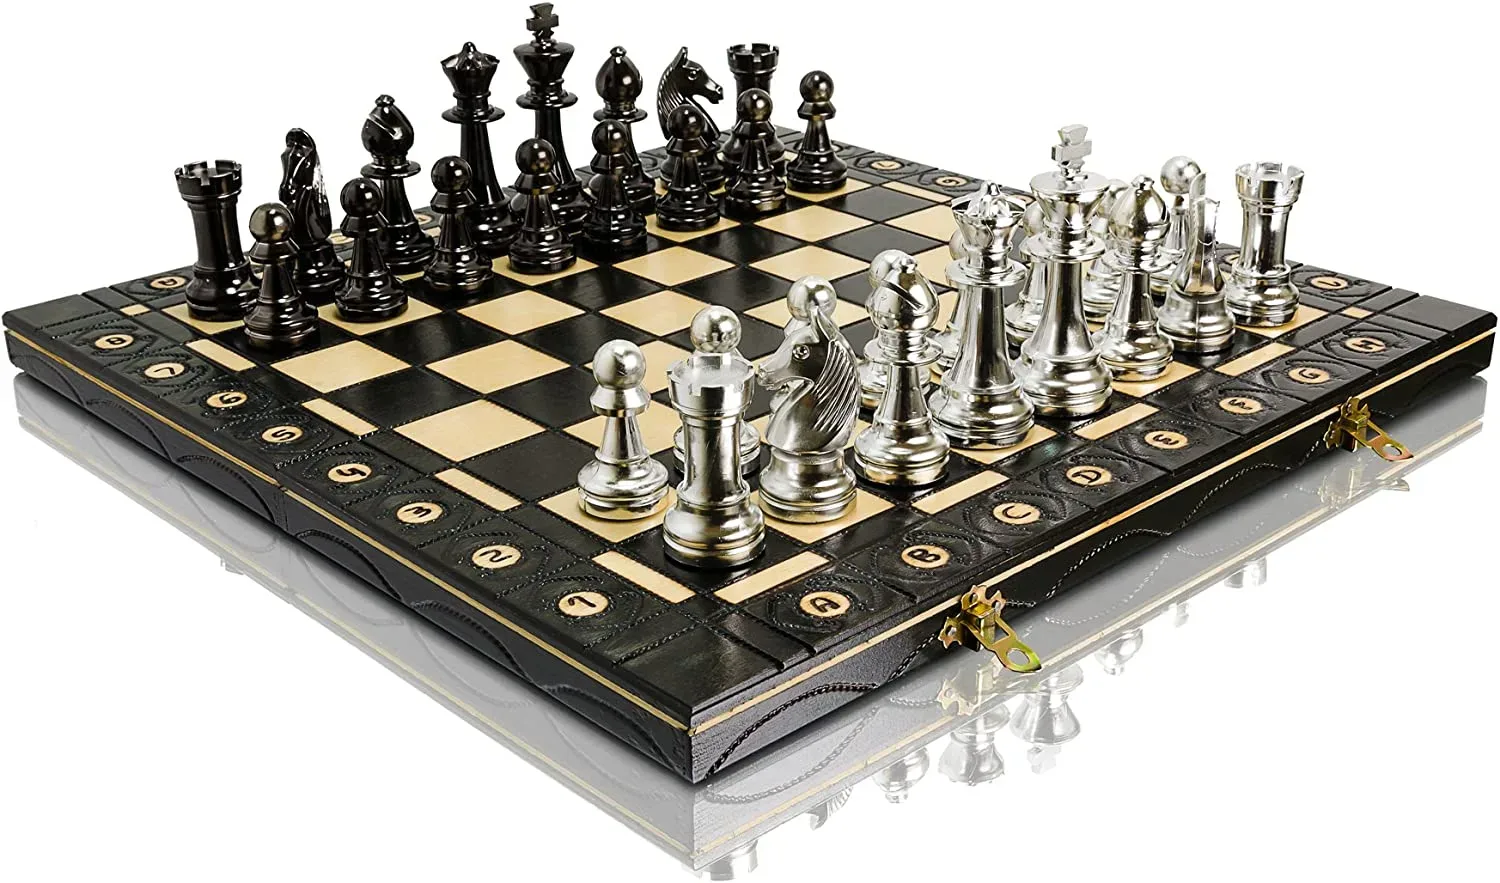 Ver categoría de ajedrez de metal plegable staunton